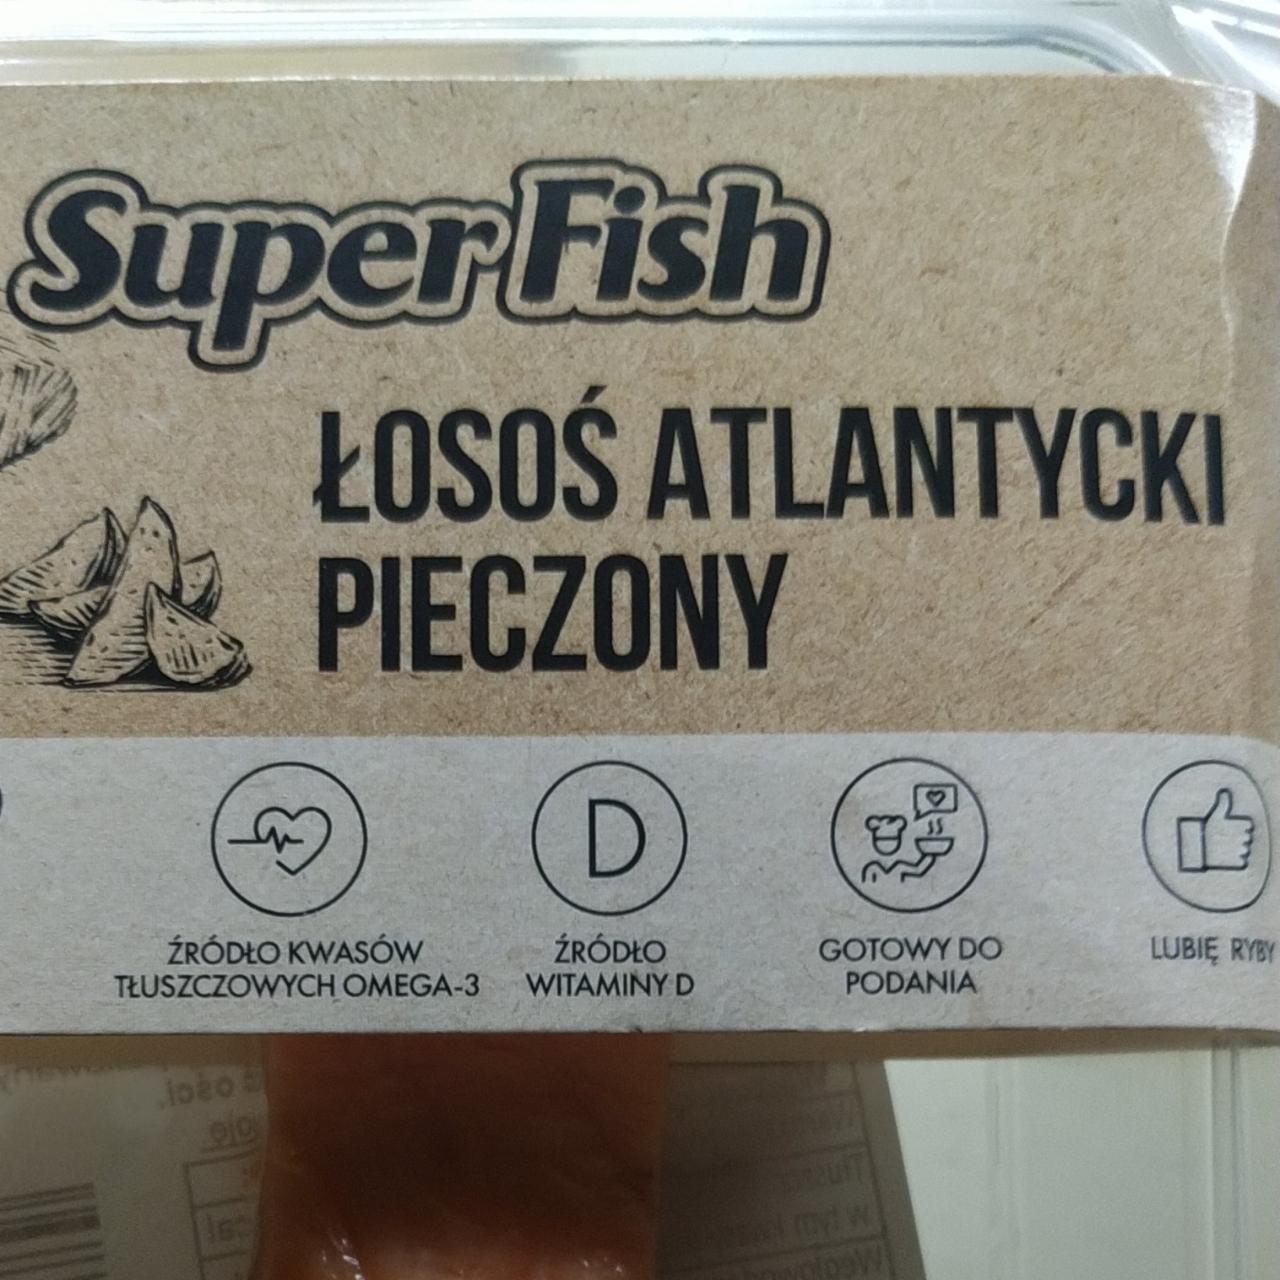 Zdjęcia - Łosoś atlantycki pieczony SuperFish